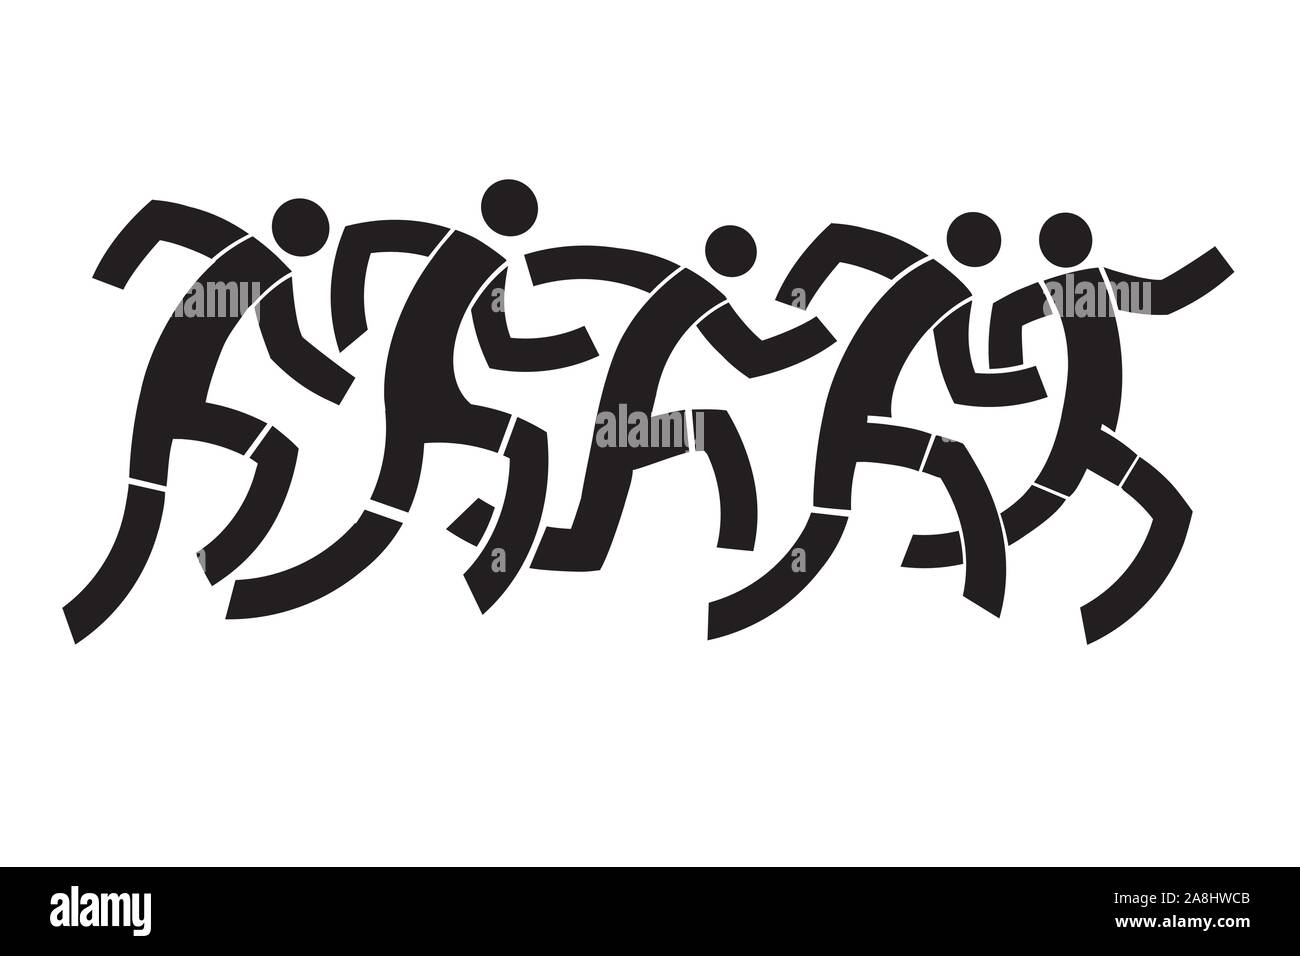 Läufer, laufende Rennen. Eine schwarze stilisierte Zeichnung der Läufer rennen. Vektor zur Verfügung. Stock Vektor